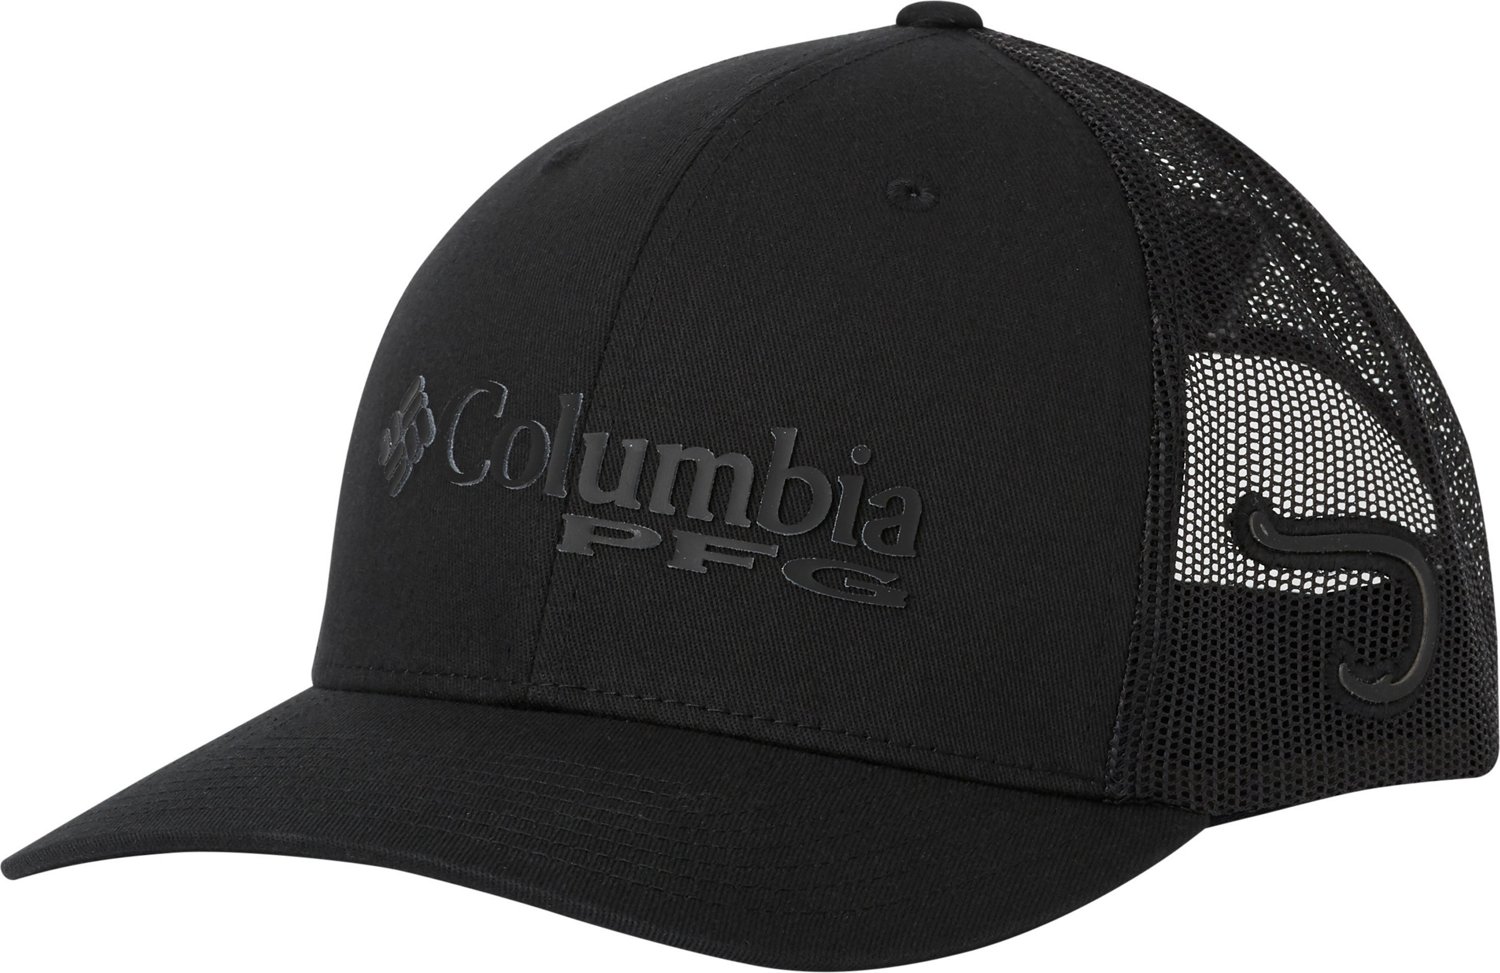 Tennessee Volunteers Columbia PFG Snapback Hat - Black